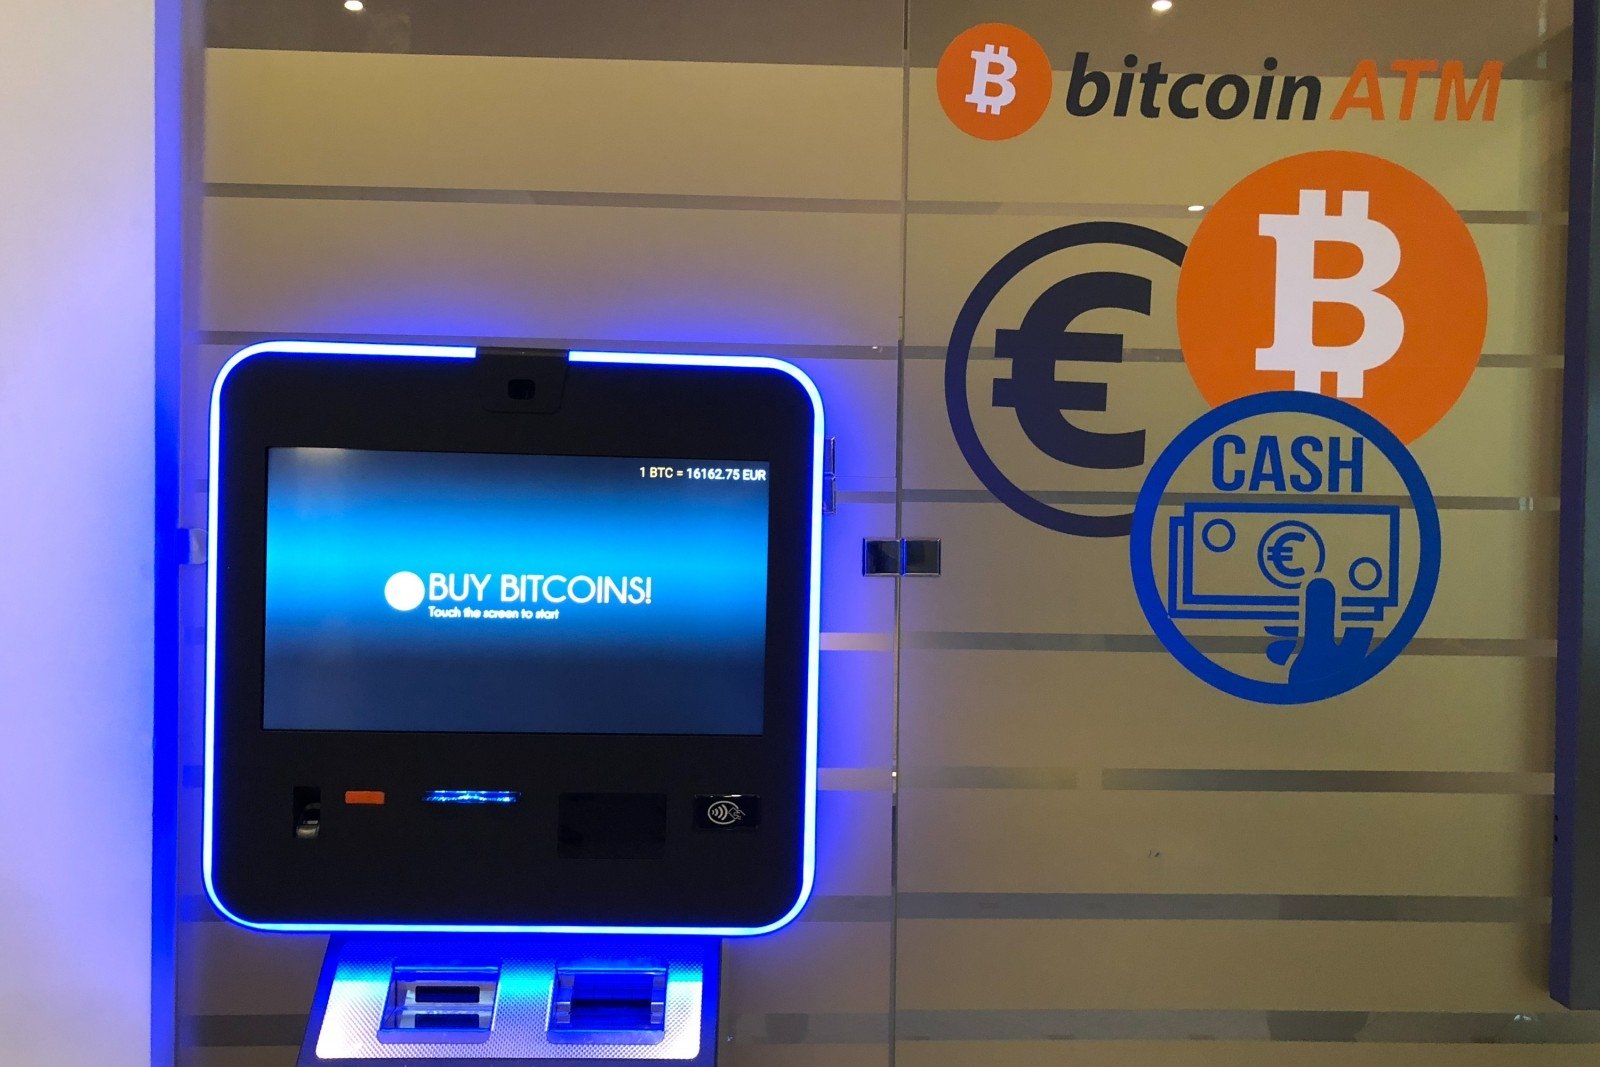 Uždirbti Pinigus Su Bitcoin Atm, Instaforex prisijungimo premija